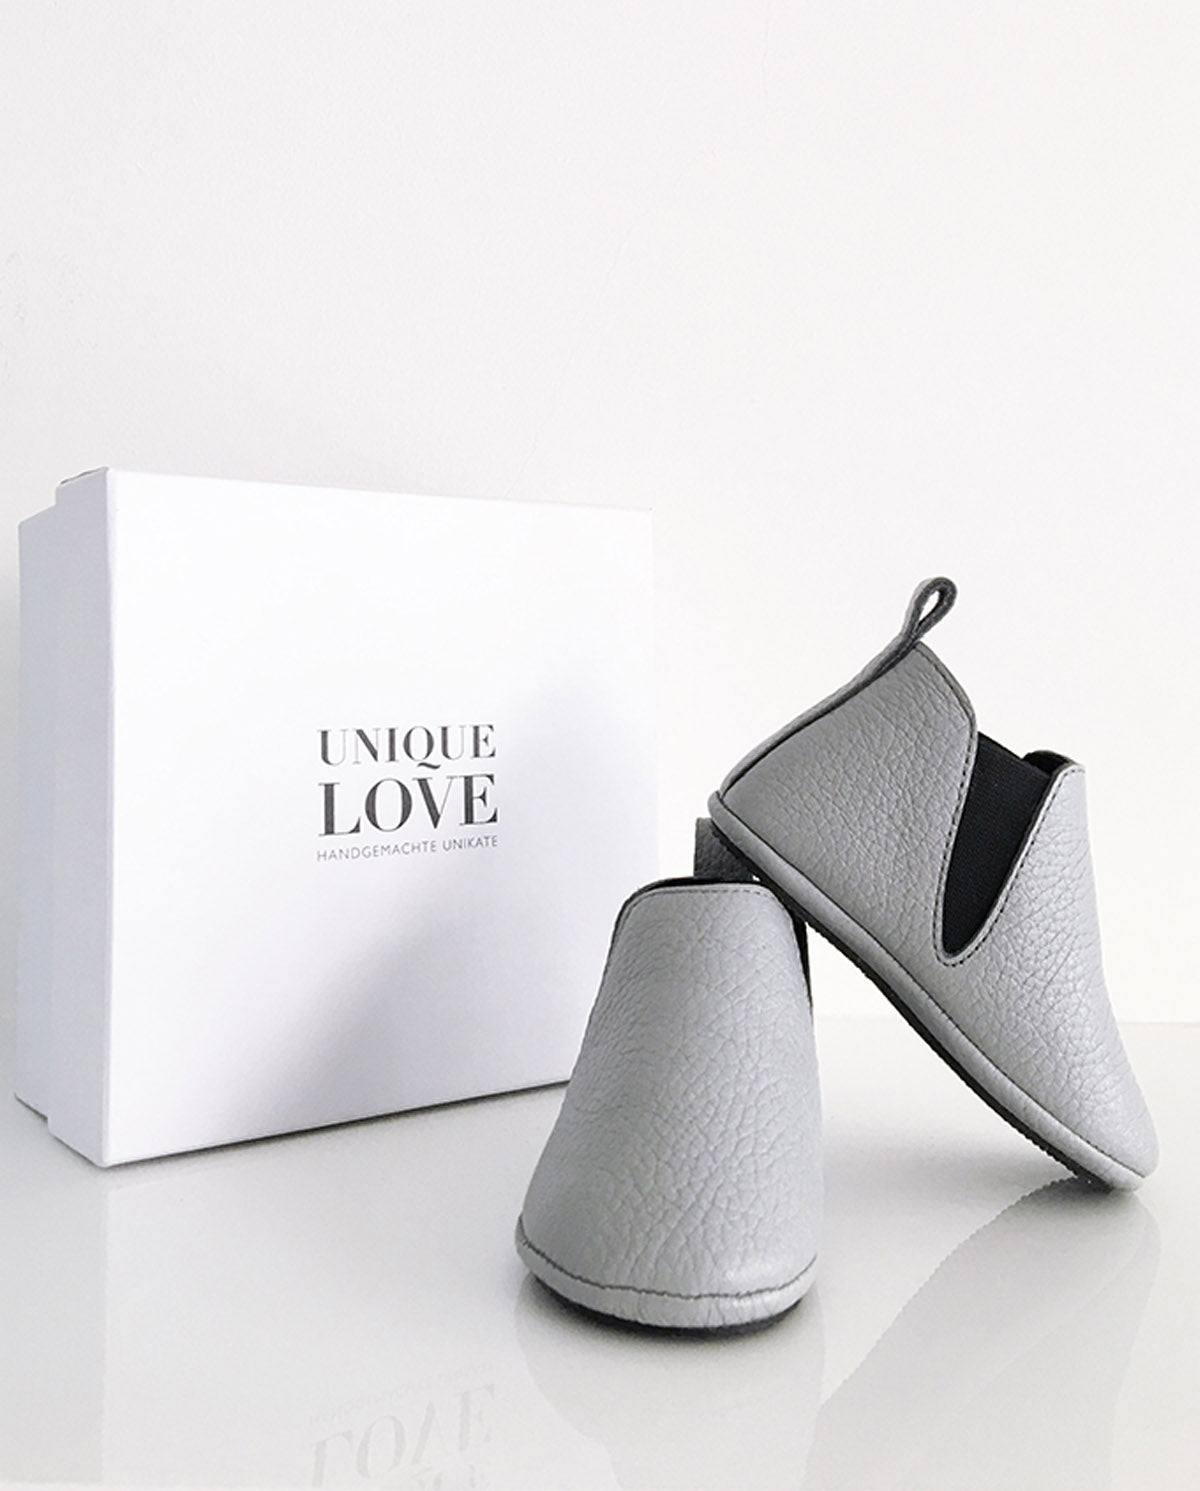 UNIQUE LOVE Bequeme und elegante Chelsea Boots - Jetzt bestellen und einen trendigen Look kreieren!